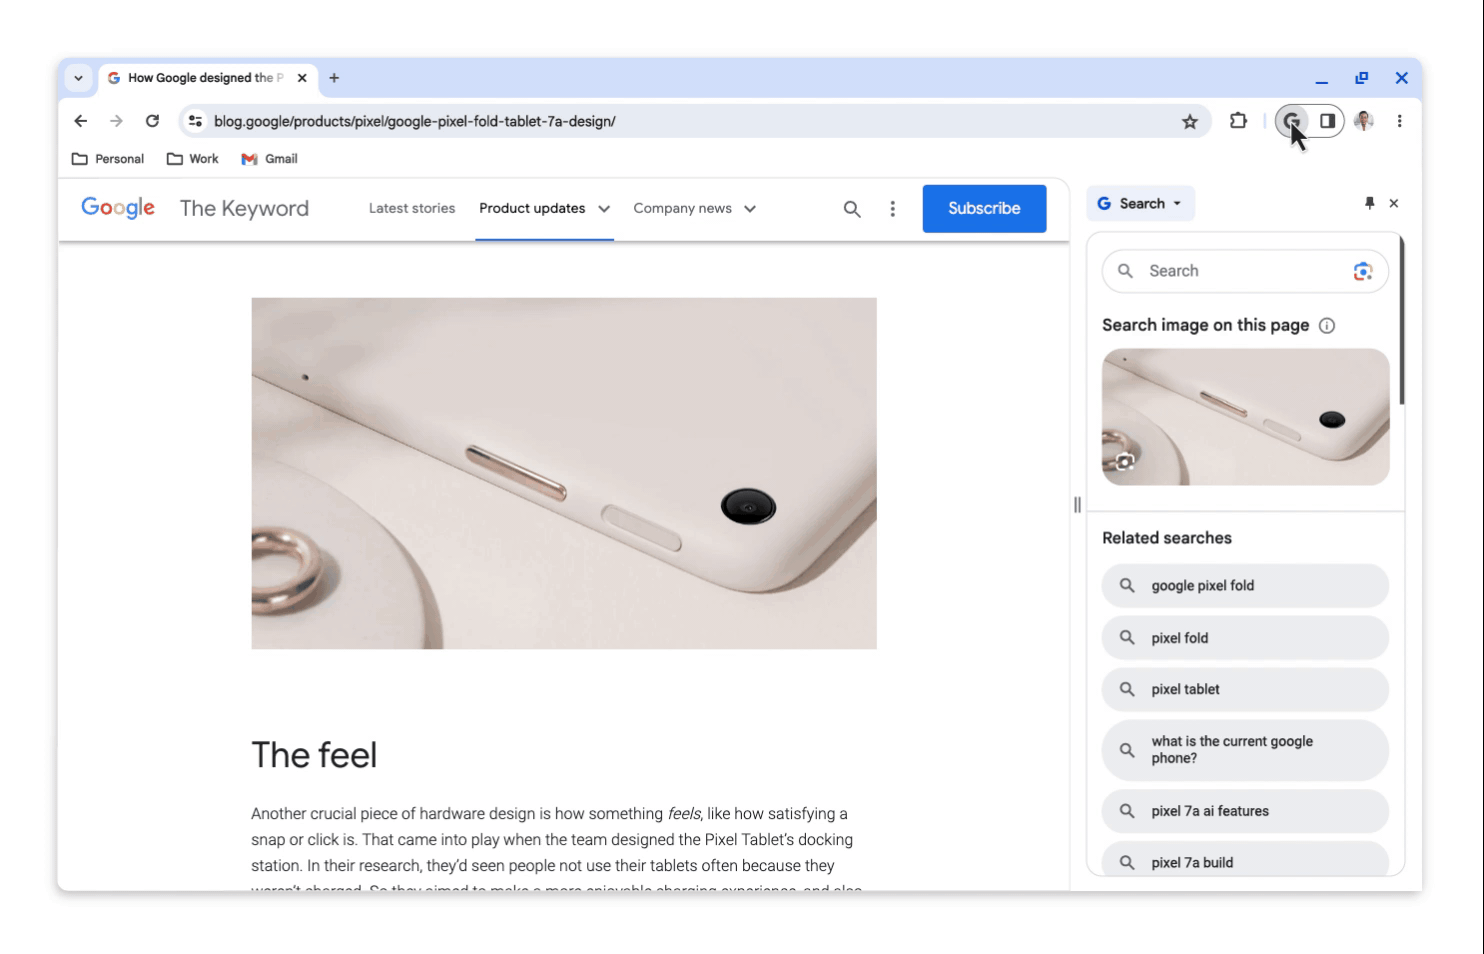 In einem Blogbeitrag von Keyword wird das Pixel Fold 7a gezeigt, wobei die Seitenleiste der Google Suche von Chrome auf der rechten Seite geöffnet ist. Der Bildschirm scrollt durch die Seitenleiste und zeigt einen Suchschlitz und Optionen zum "Durchsuchen von Bildern auf dieser Seite", zum Auswählen von "verwandten Suchen" und zum Lesen von "Über die Quelle".